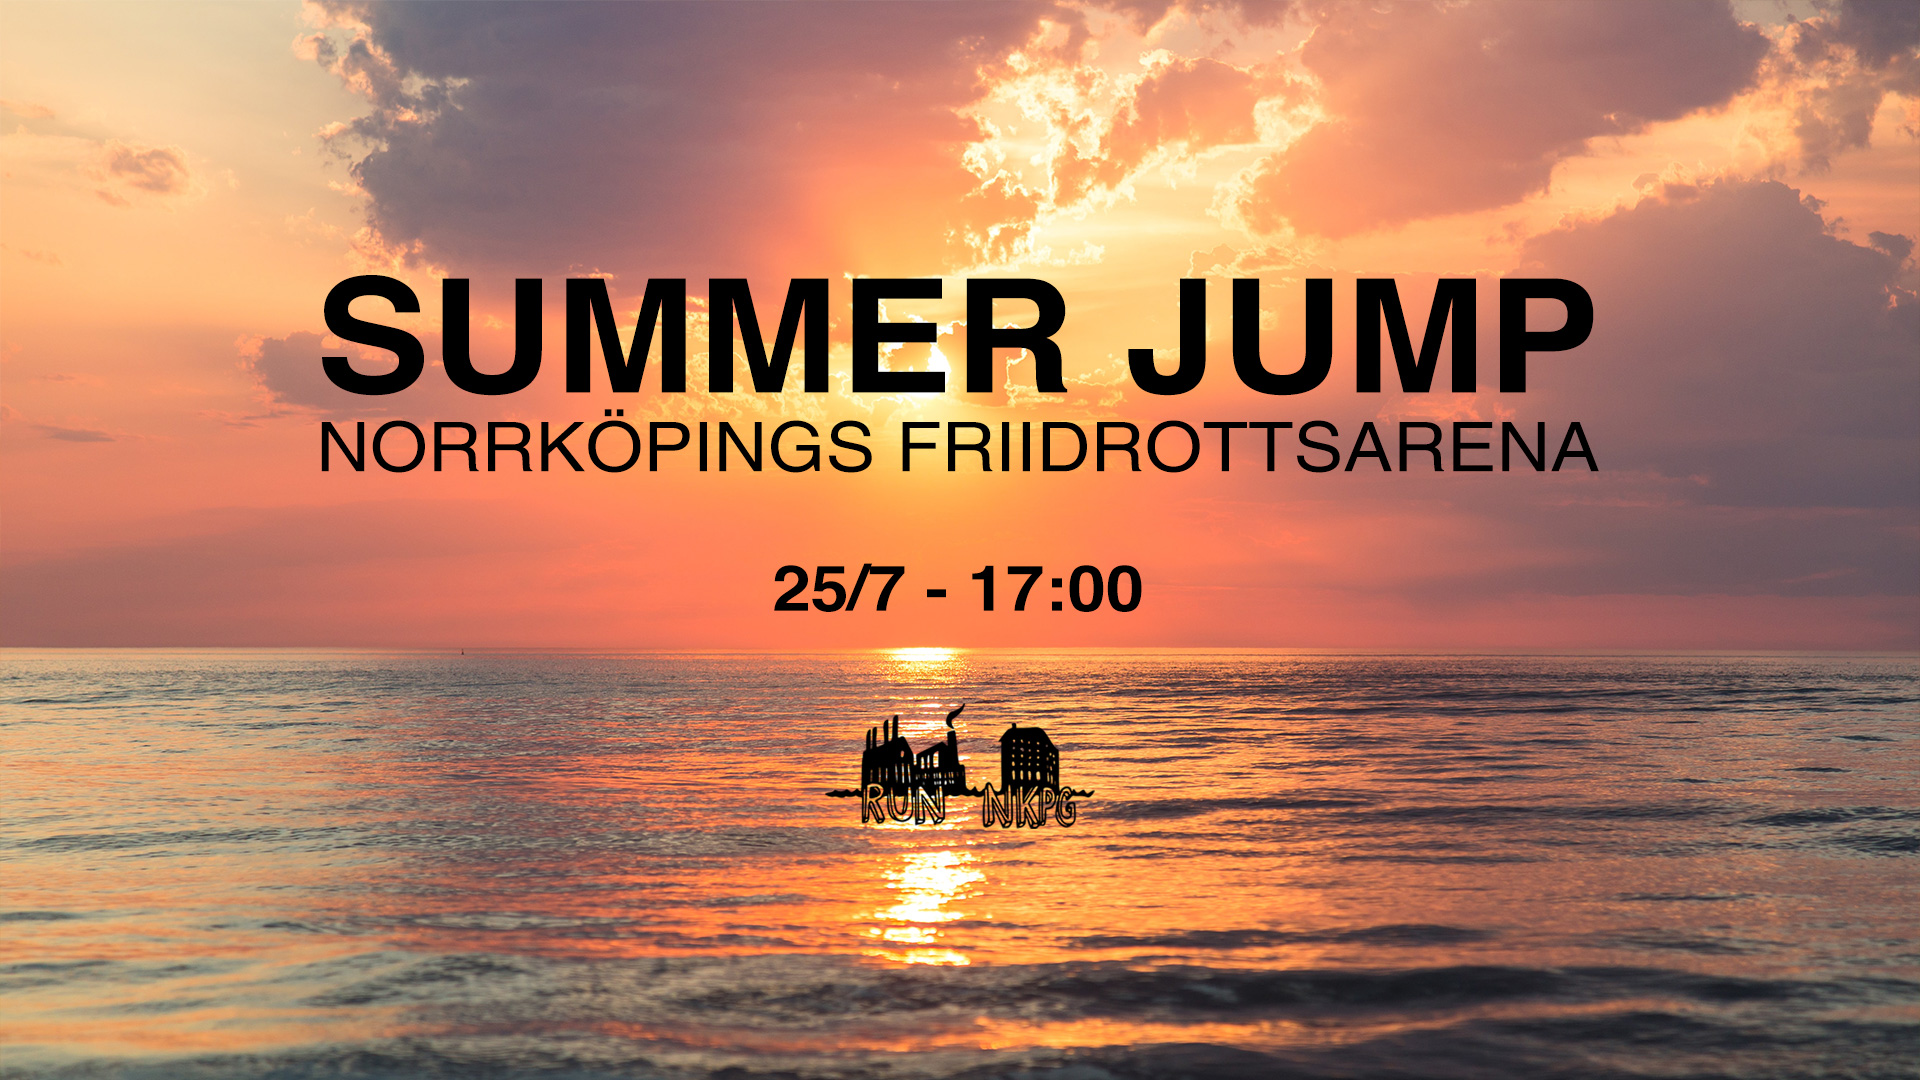 Event 139 - Summer jump